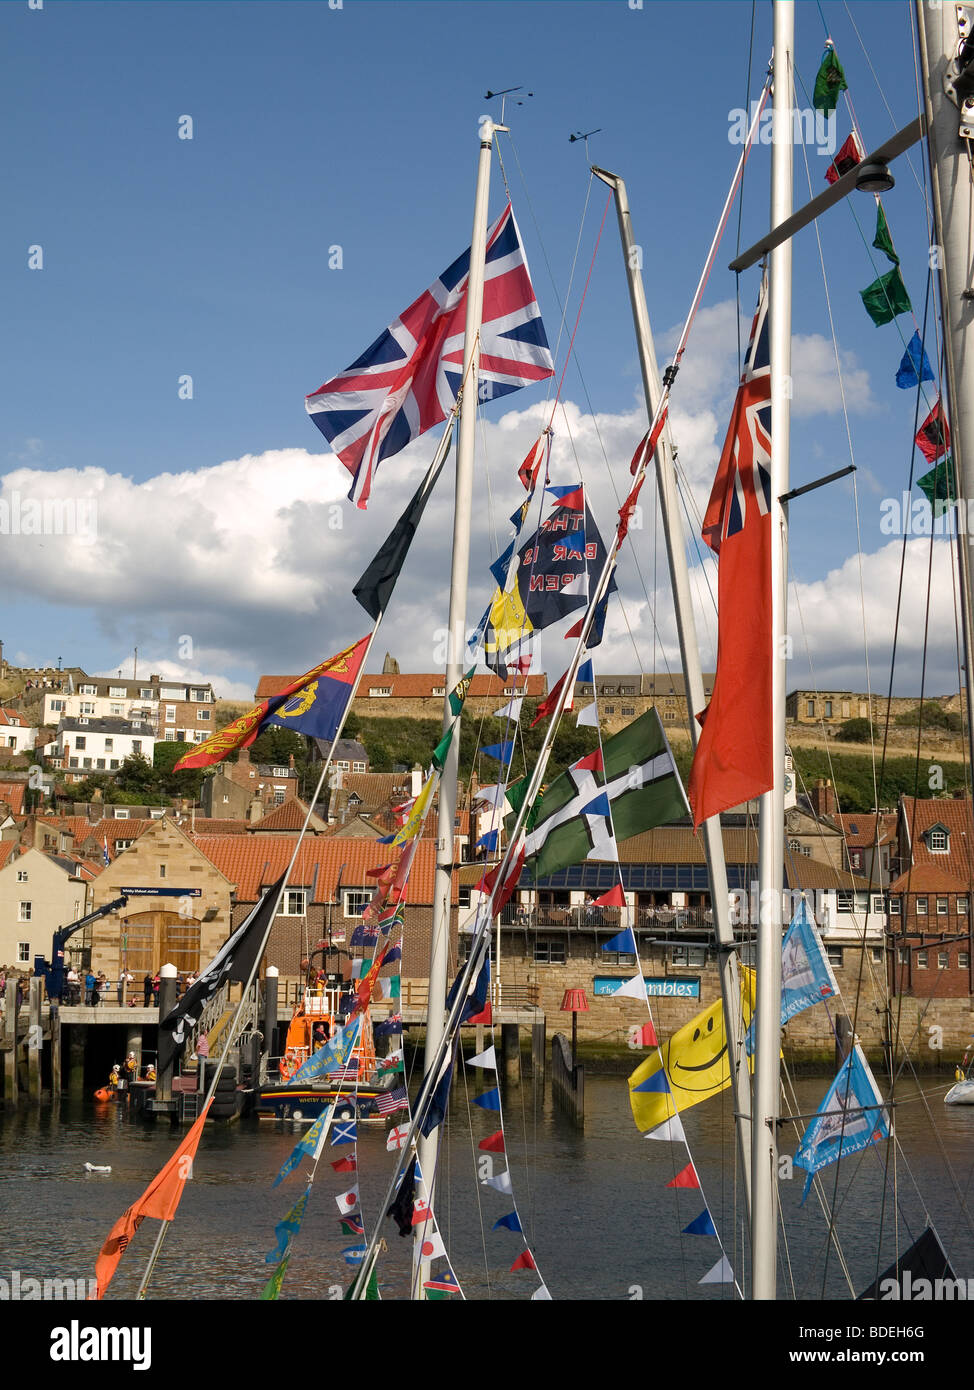 Ciudad Whitby vistos a través de banderas y bunting en yates en puerto durante la 169ª regata anual de agosto de 2009 Foto de stock